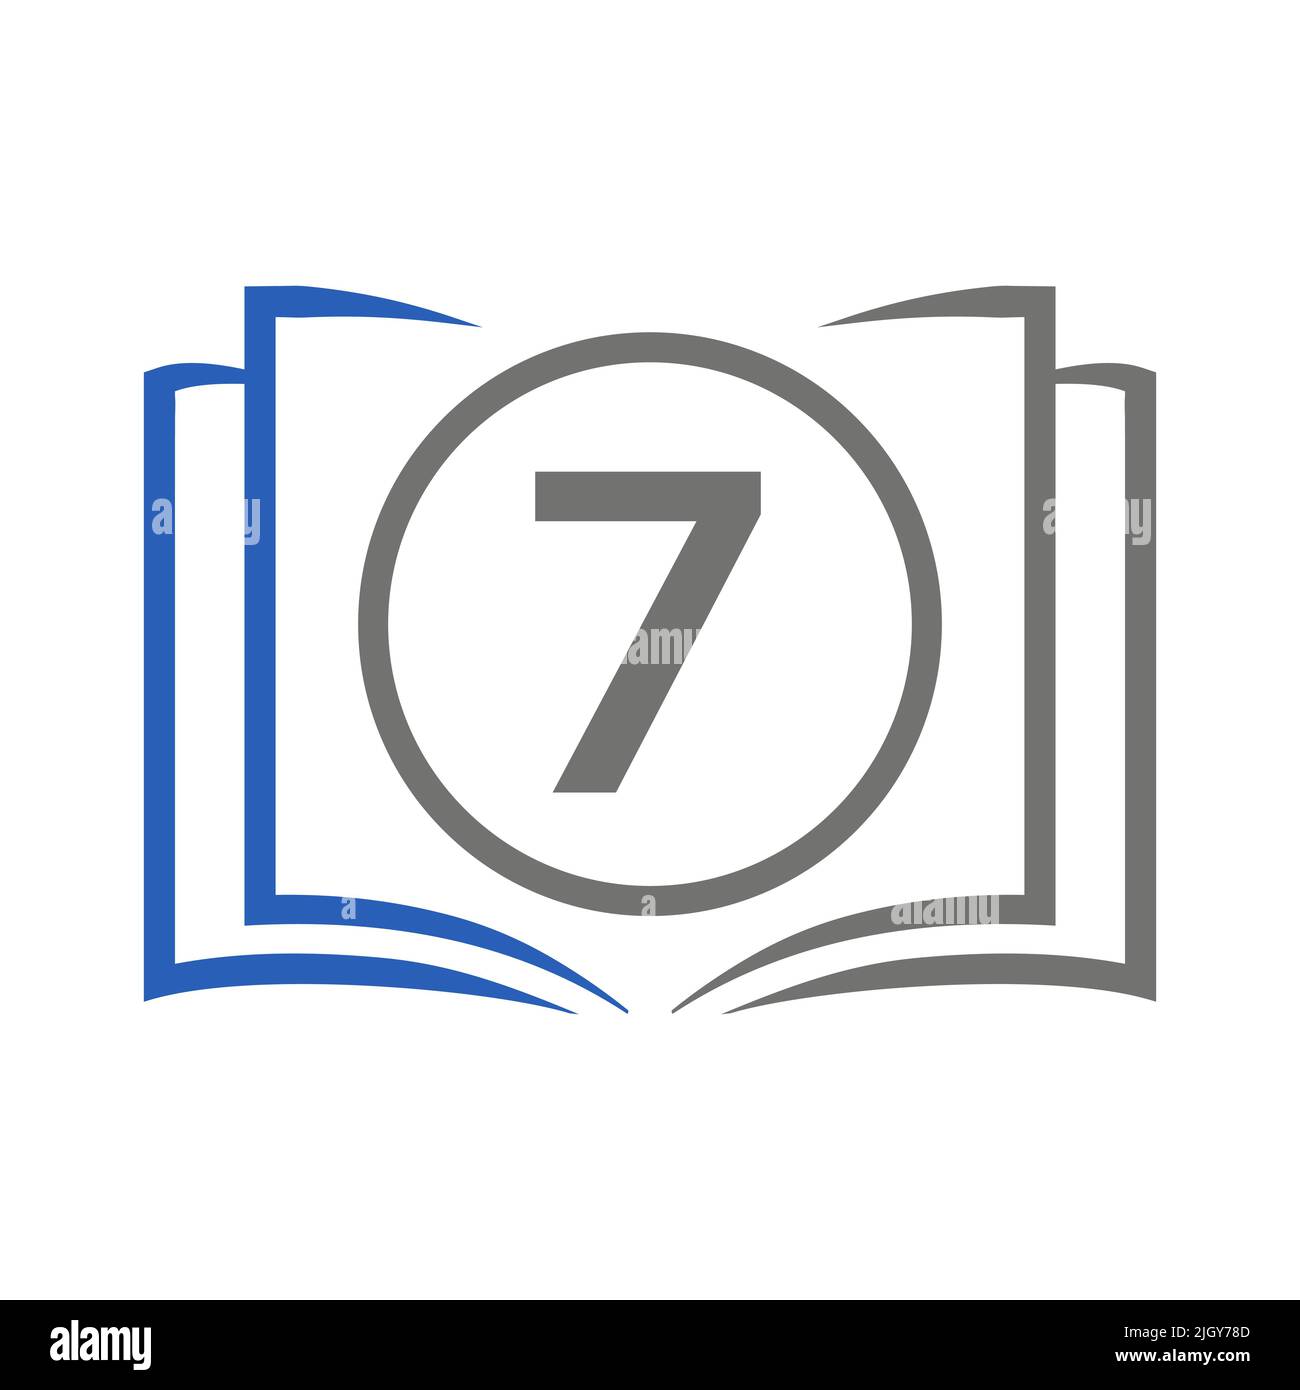 Bildungslogo Auf Der Vorlage „Letter 7“. Open Book Logo Auf 7 Letter, Erste Vorlage Für Bildungszeichen-Konzept Stock Vektor